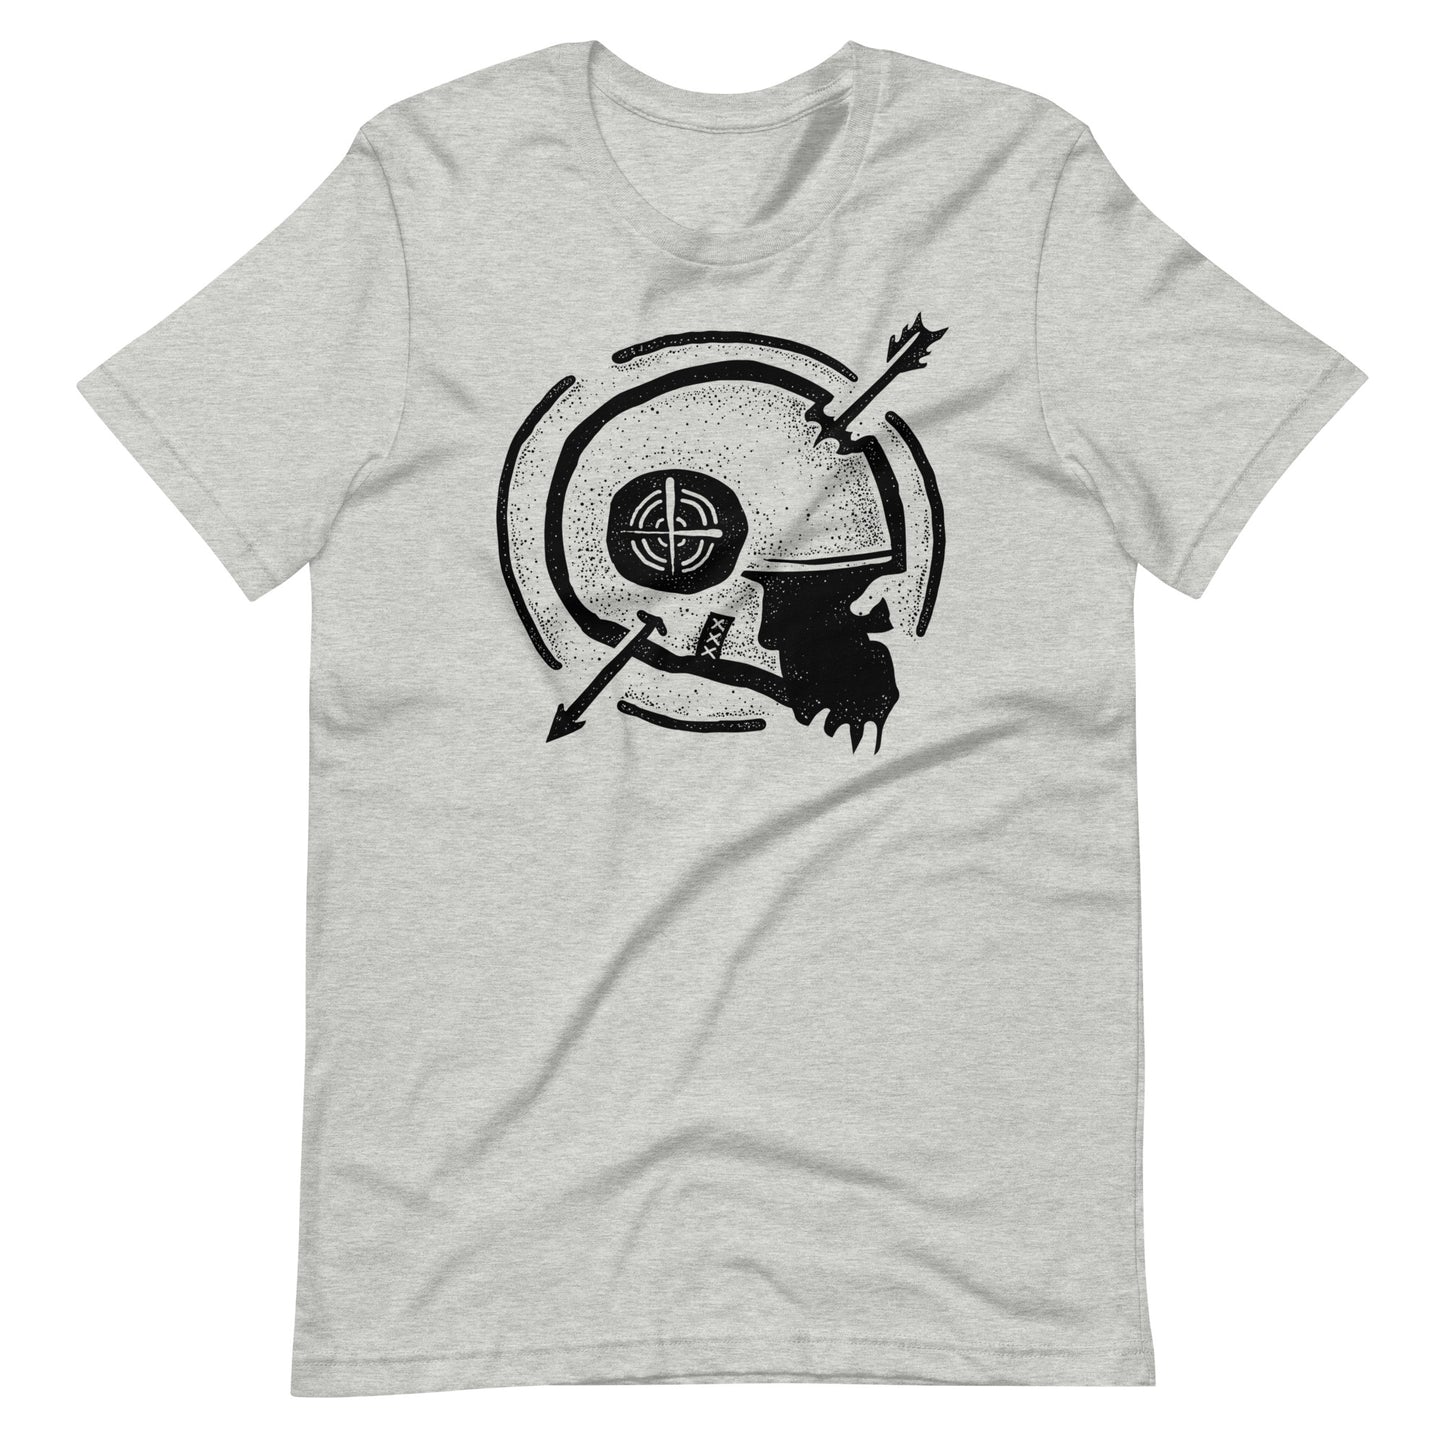 Dead Arrow Black - Men's t-shirt - Athletic Heather Front